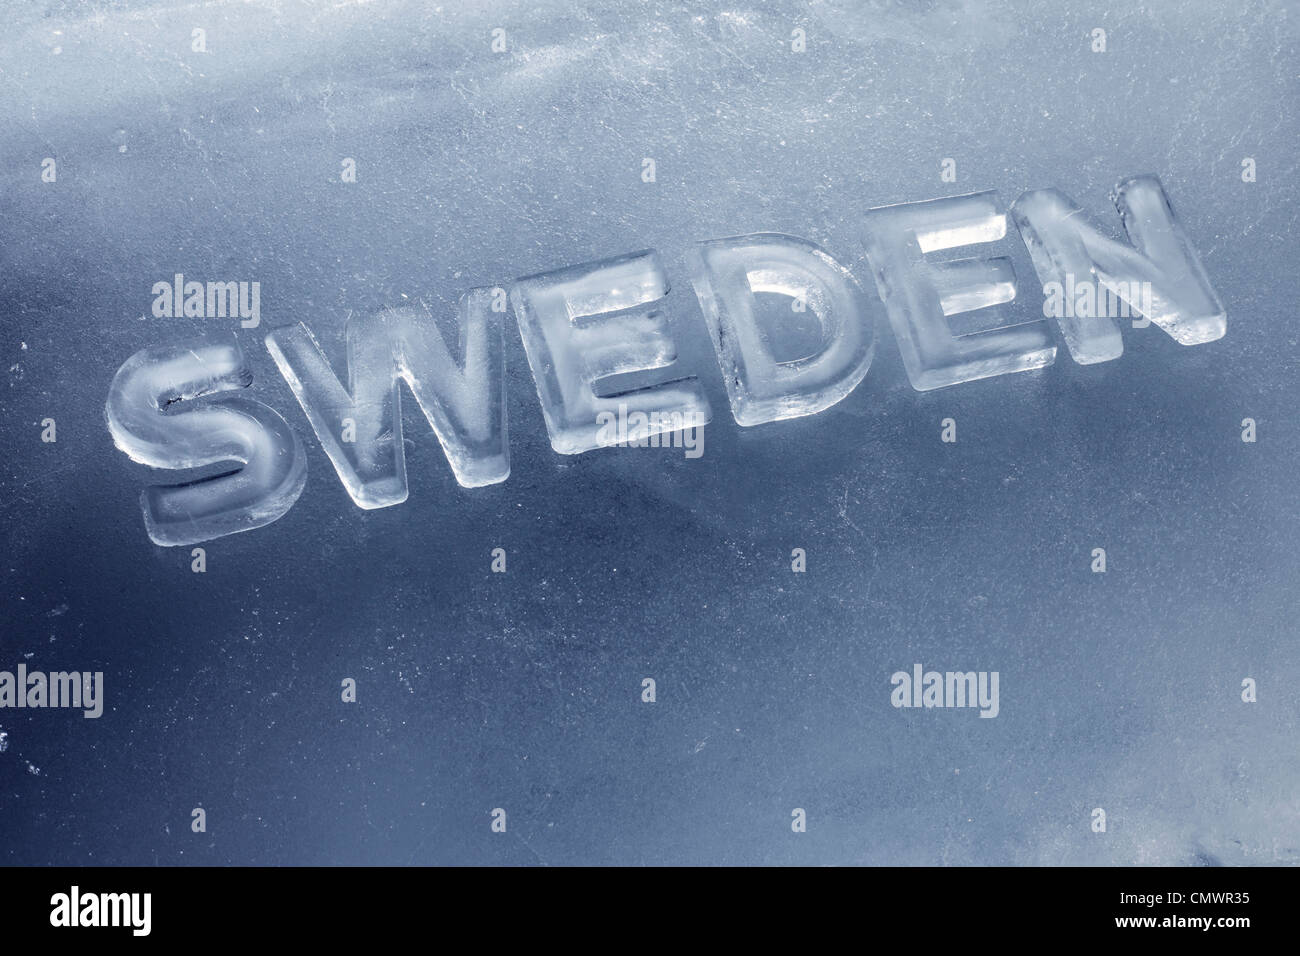 Wort-Schweden mit Buchstaben geschrieben hergestellt aus echtem Eis. Stockfoto